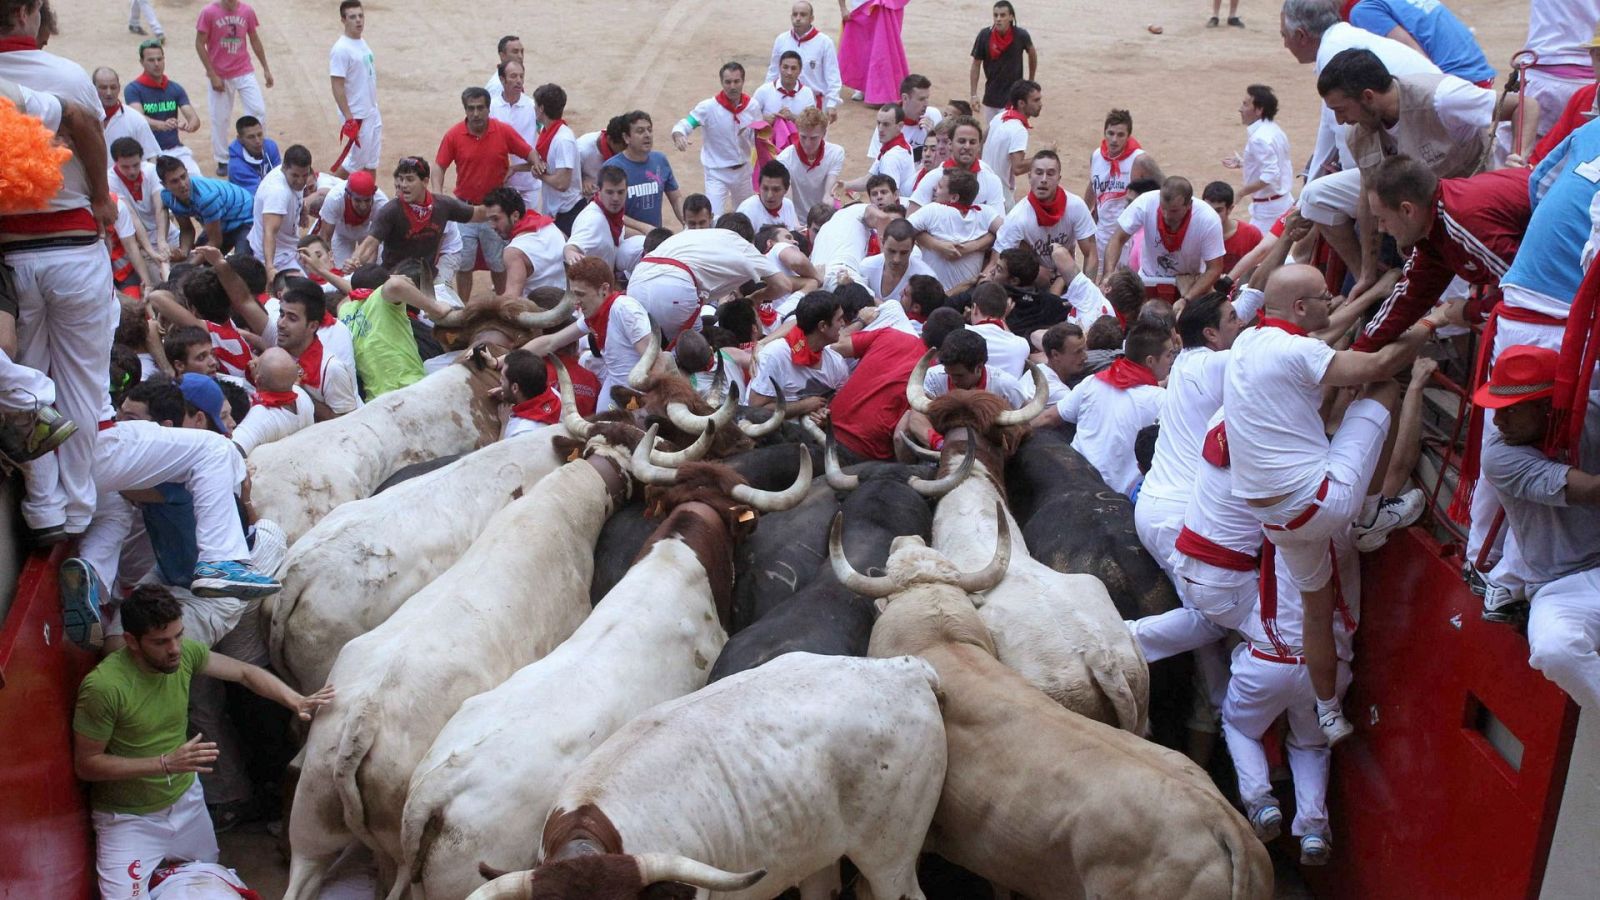 Sanfermines 2013: El tapón en la plaza de toros de Pamplona